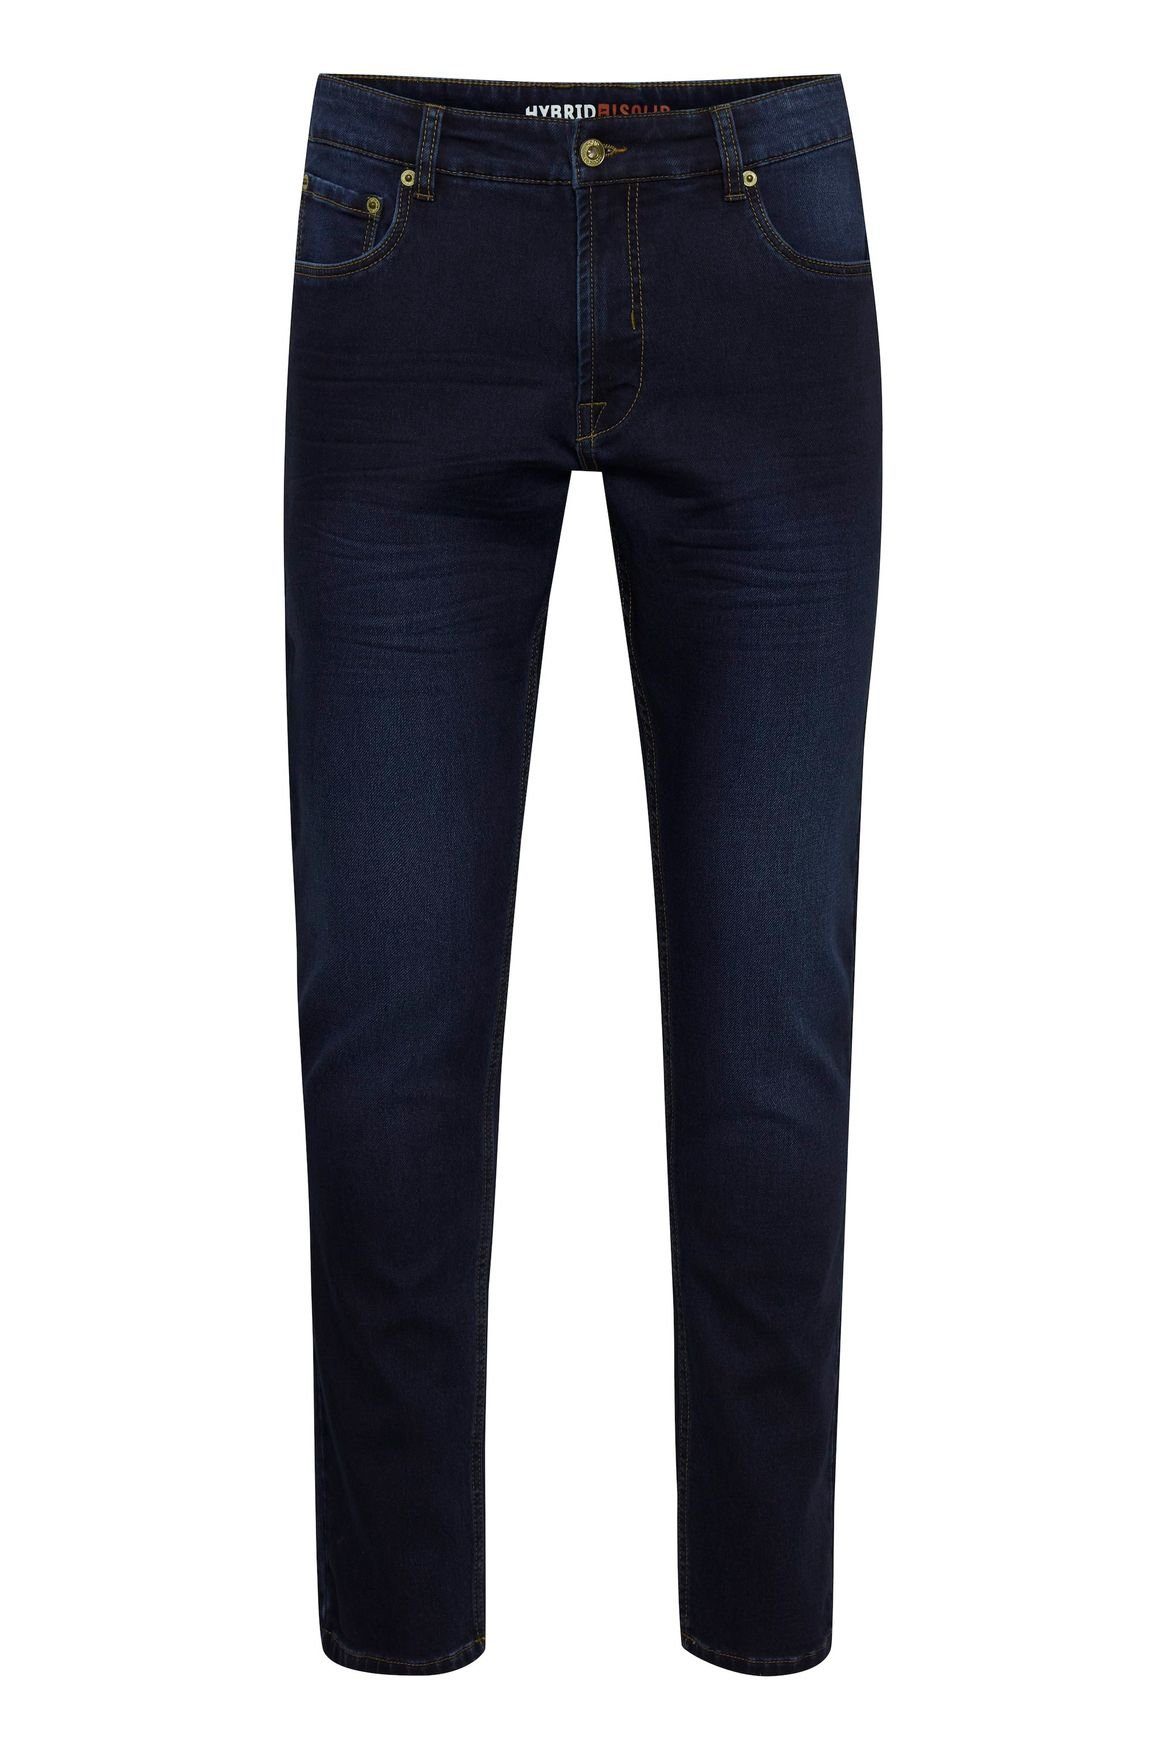 !Solid Slim-fit-Jeans Basic Slim Fit Jeans Black Denim Pants SDTot (1-tlg) 4121 in Dunkelblau